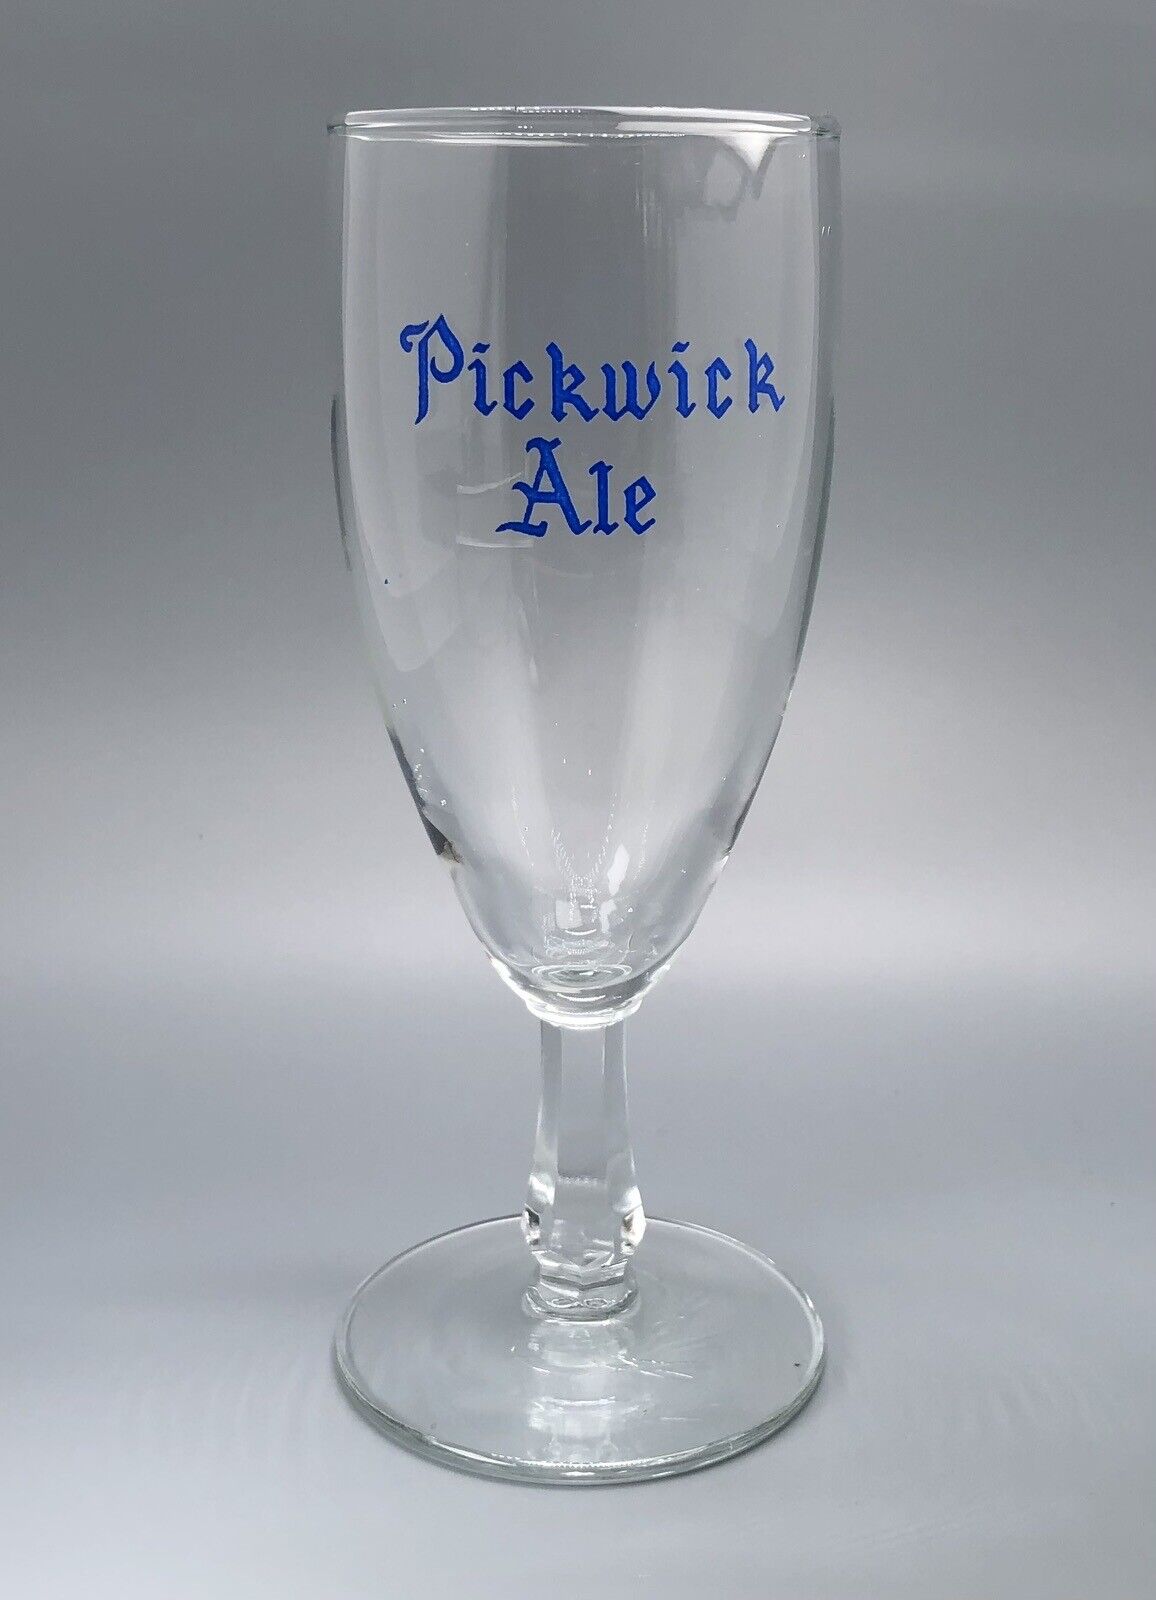 Pickwick Ale Stemmed Glass Goblet / Vtg Tavern Advertising / Man Cave Bar Decor